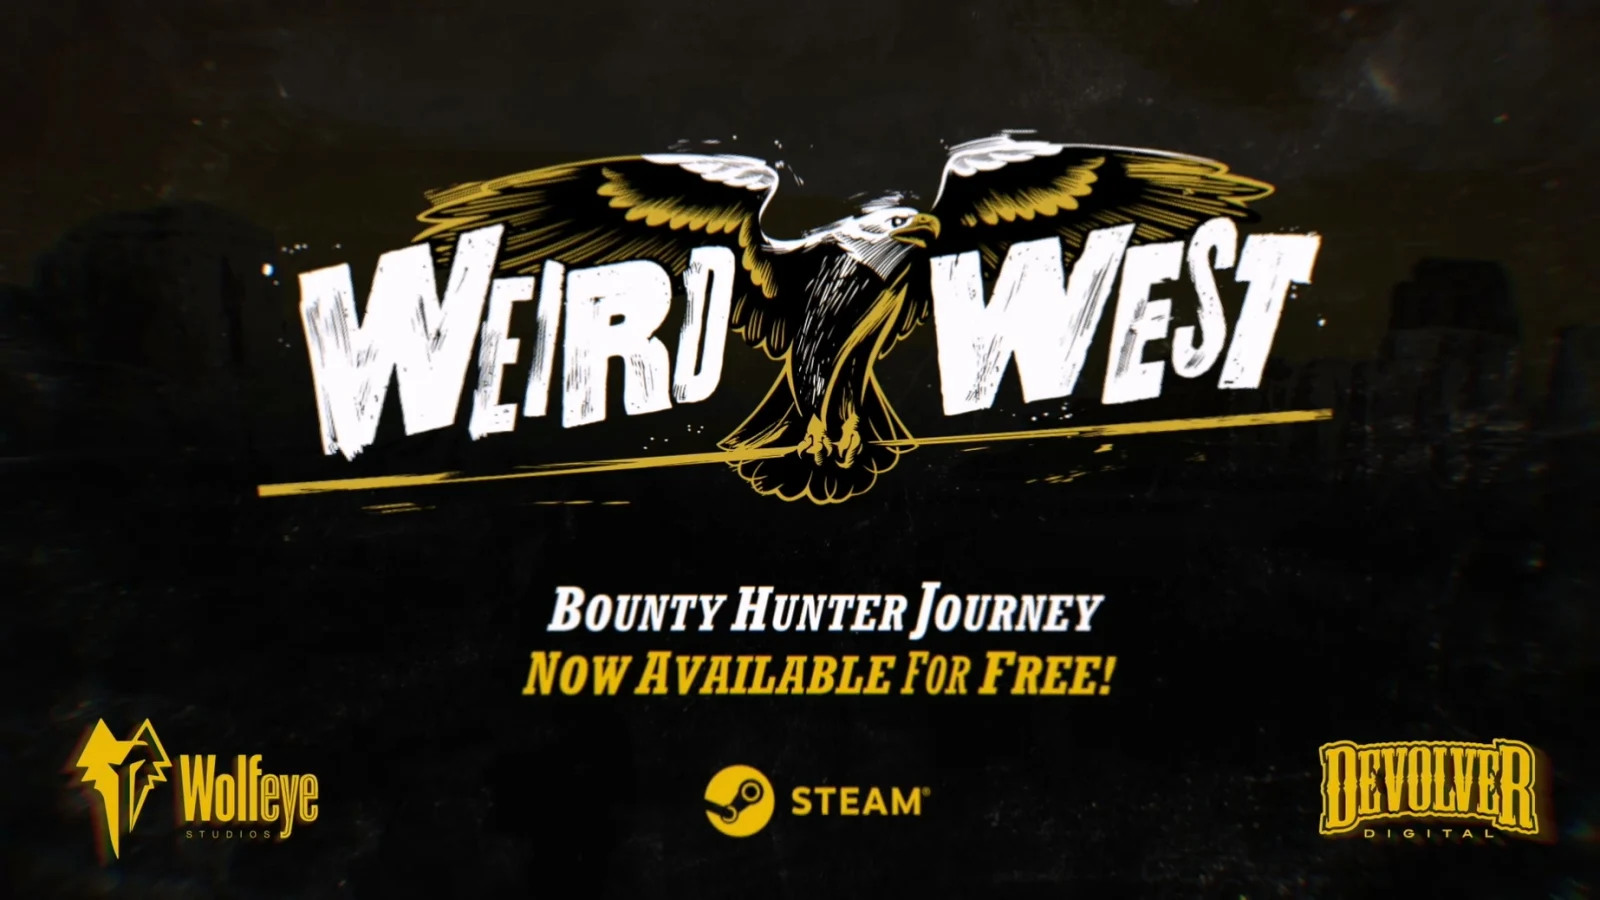 庆《诡野西部》上线满6个月，游戏首章“赏金猎人旅途”现免费登陆Steam平台